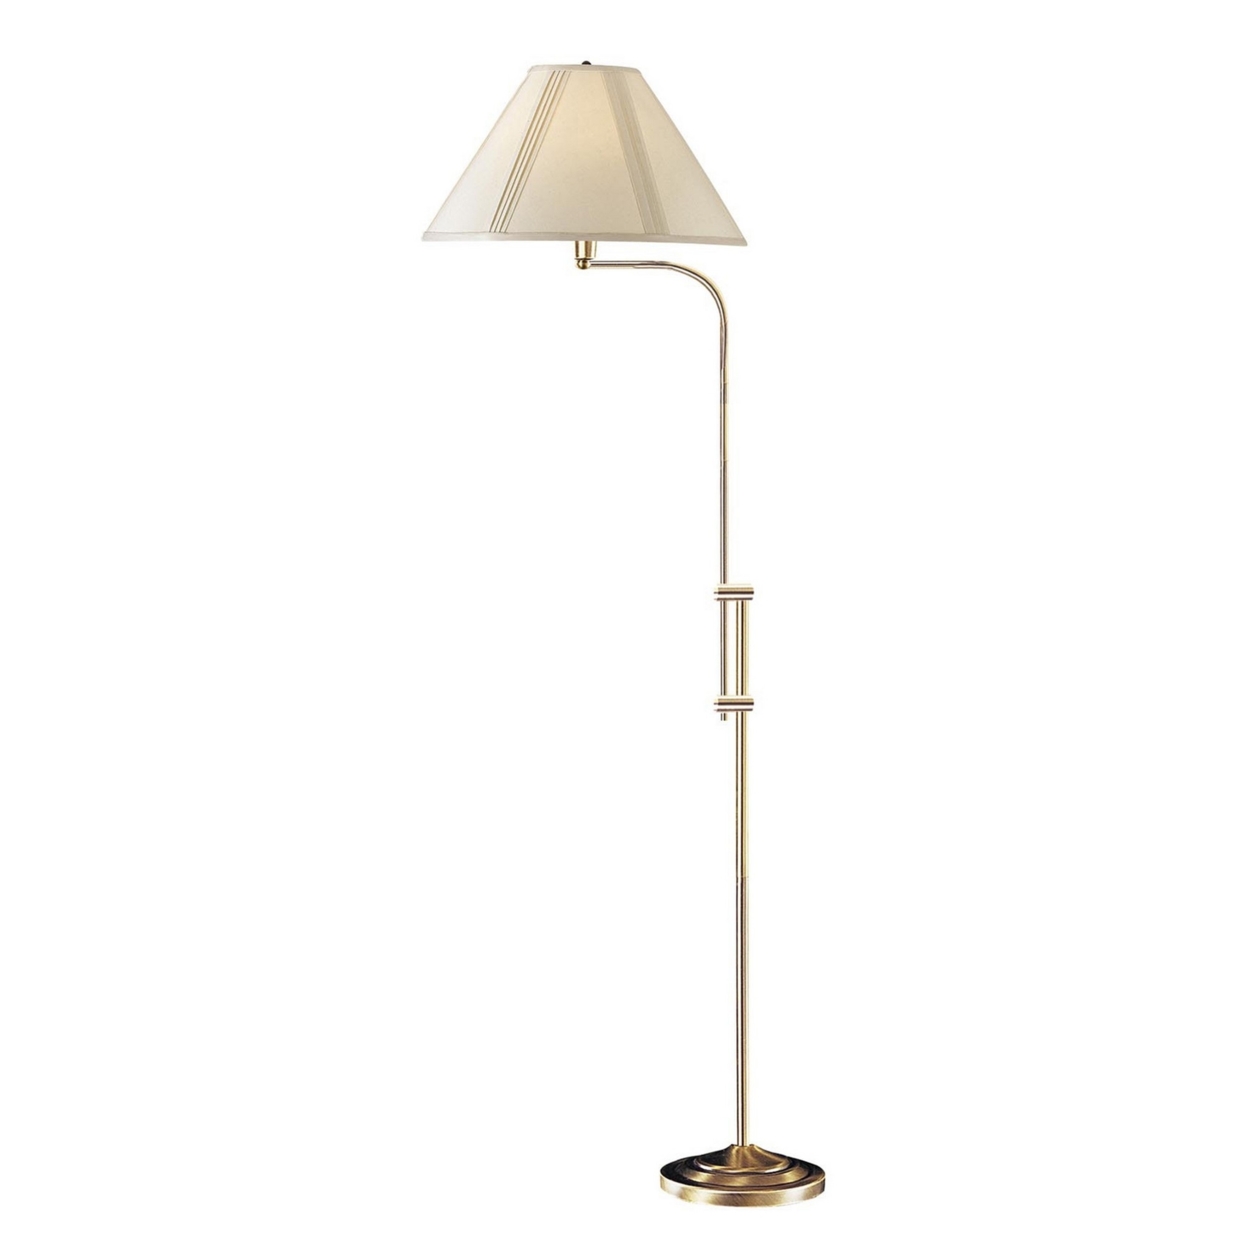 3 Way Metal Floor Lamp With And Adjustable Height Mechanism, Gold- Saltoro Sherpi